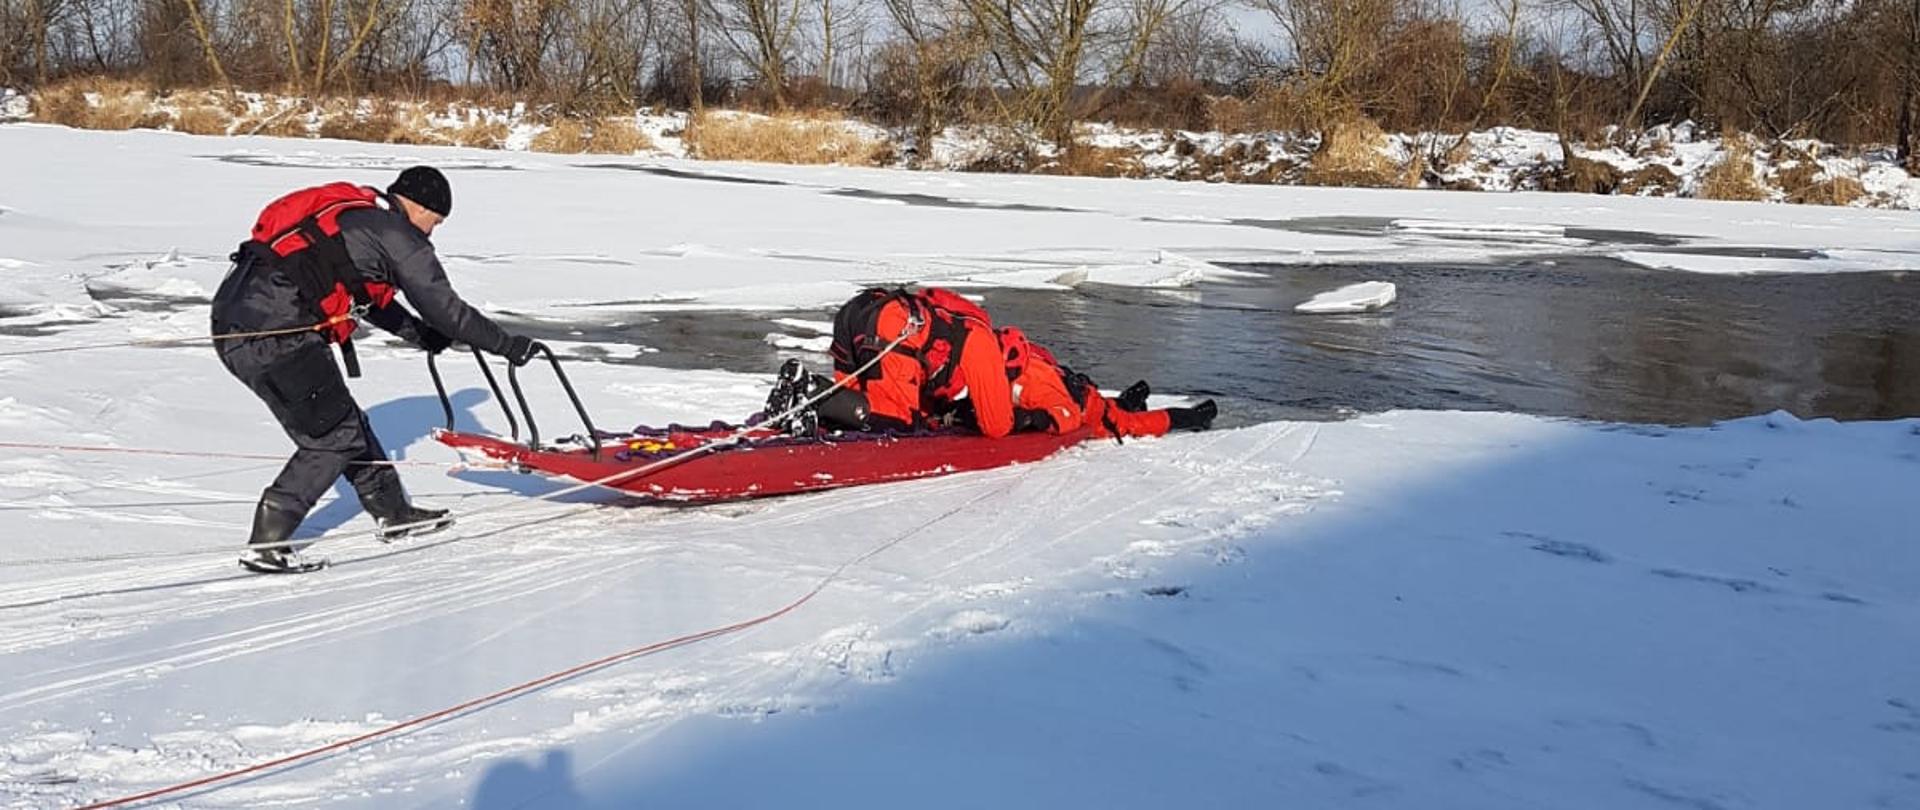 Dwóch ratowników na zamarzniętym akwenie przy pomocy sań lodowych podejmuje próbę wydobycia poszkodowanego na brzeg.